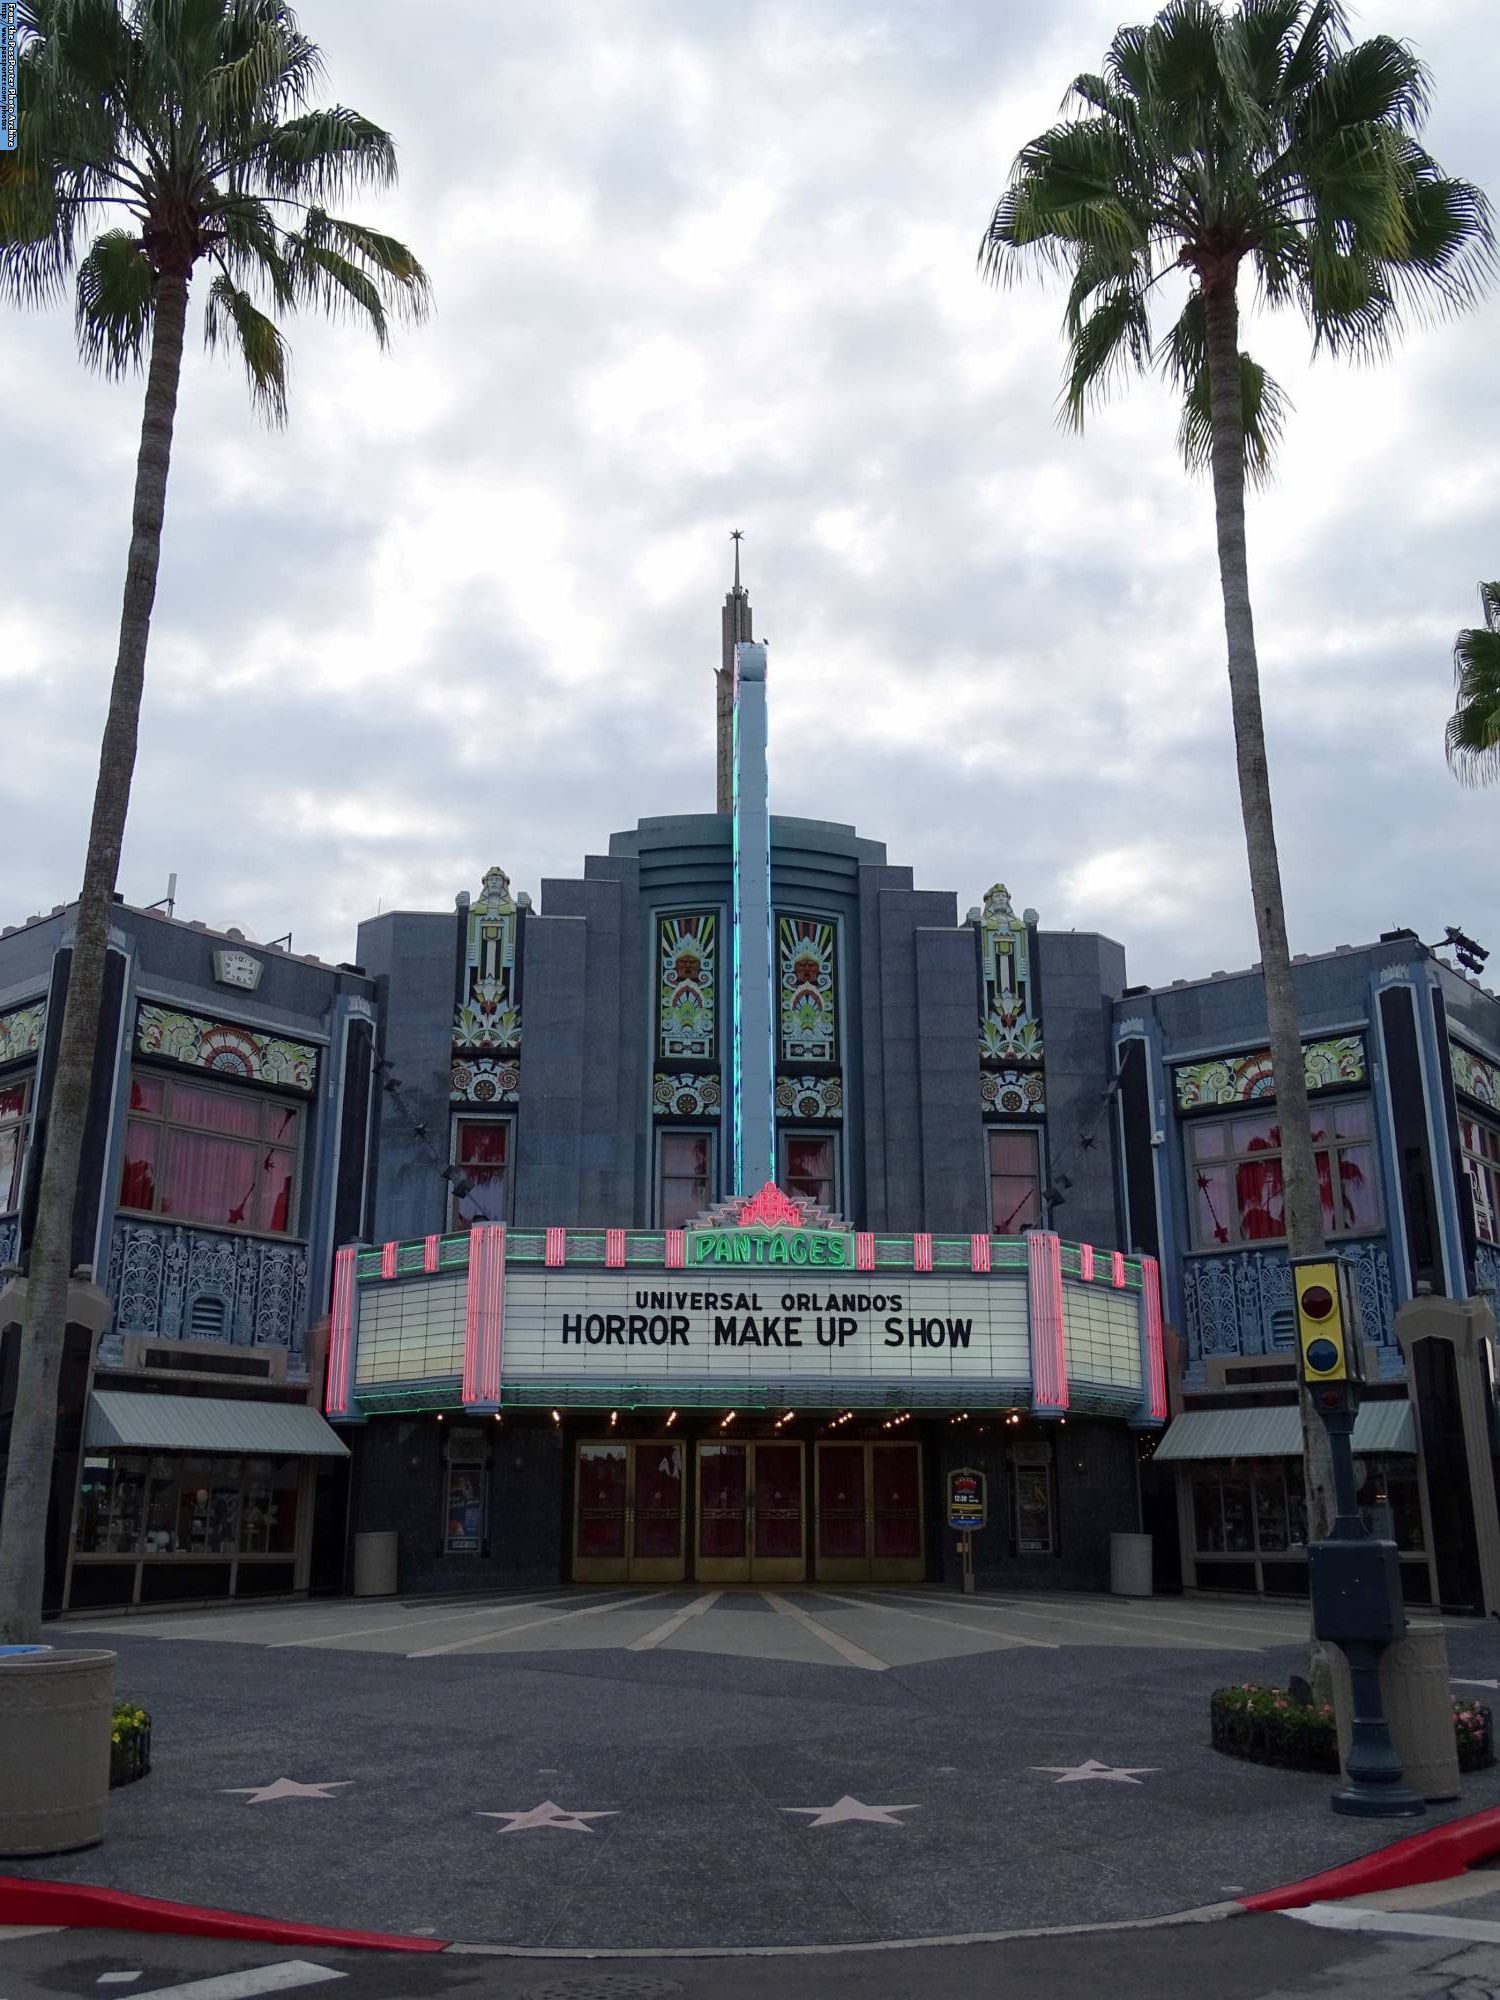 Universal Orlando's Horror Make Up Show